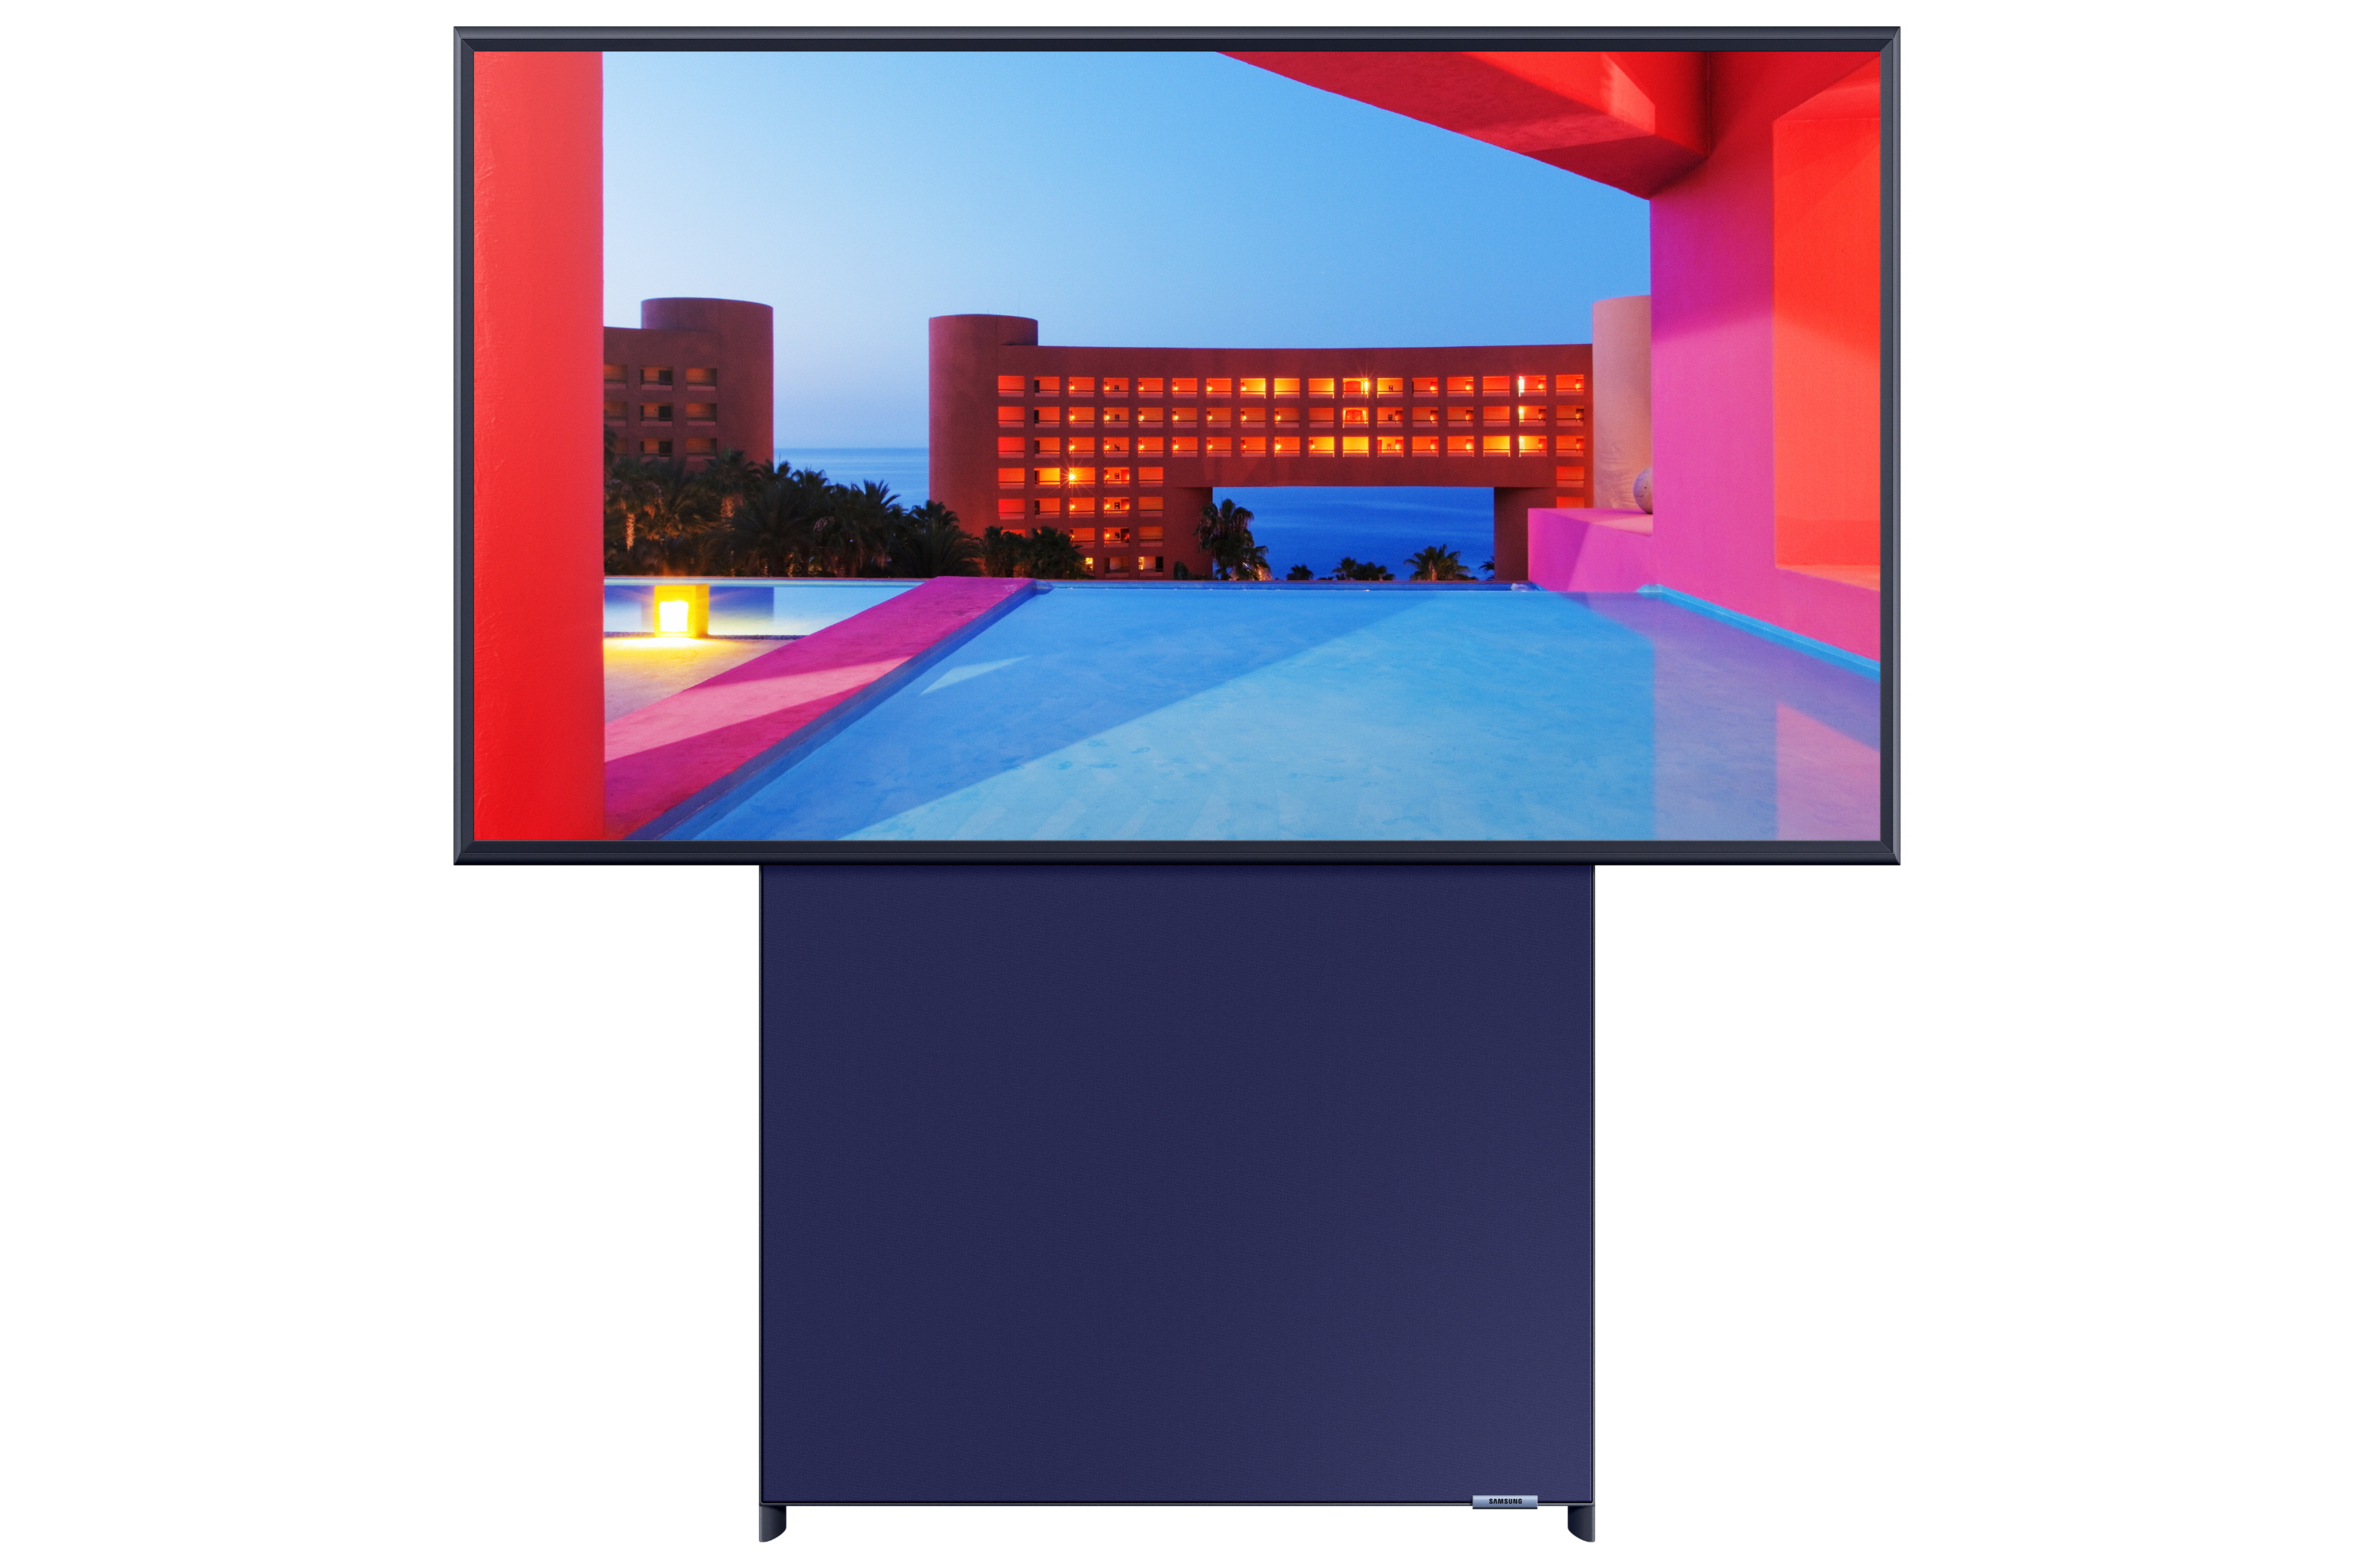 Samsung ra mắt dòng sản phẩm TV MicroLED, QLED 8K và Lifestyle TV mới